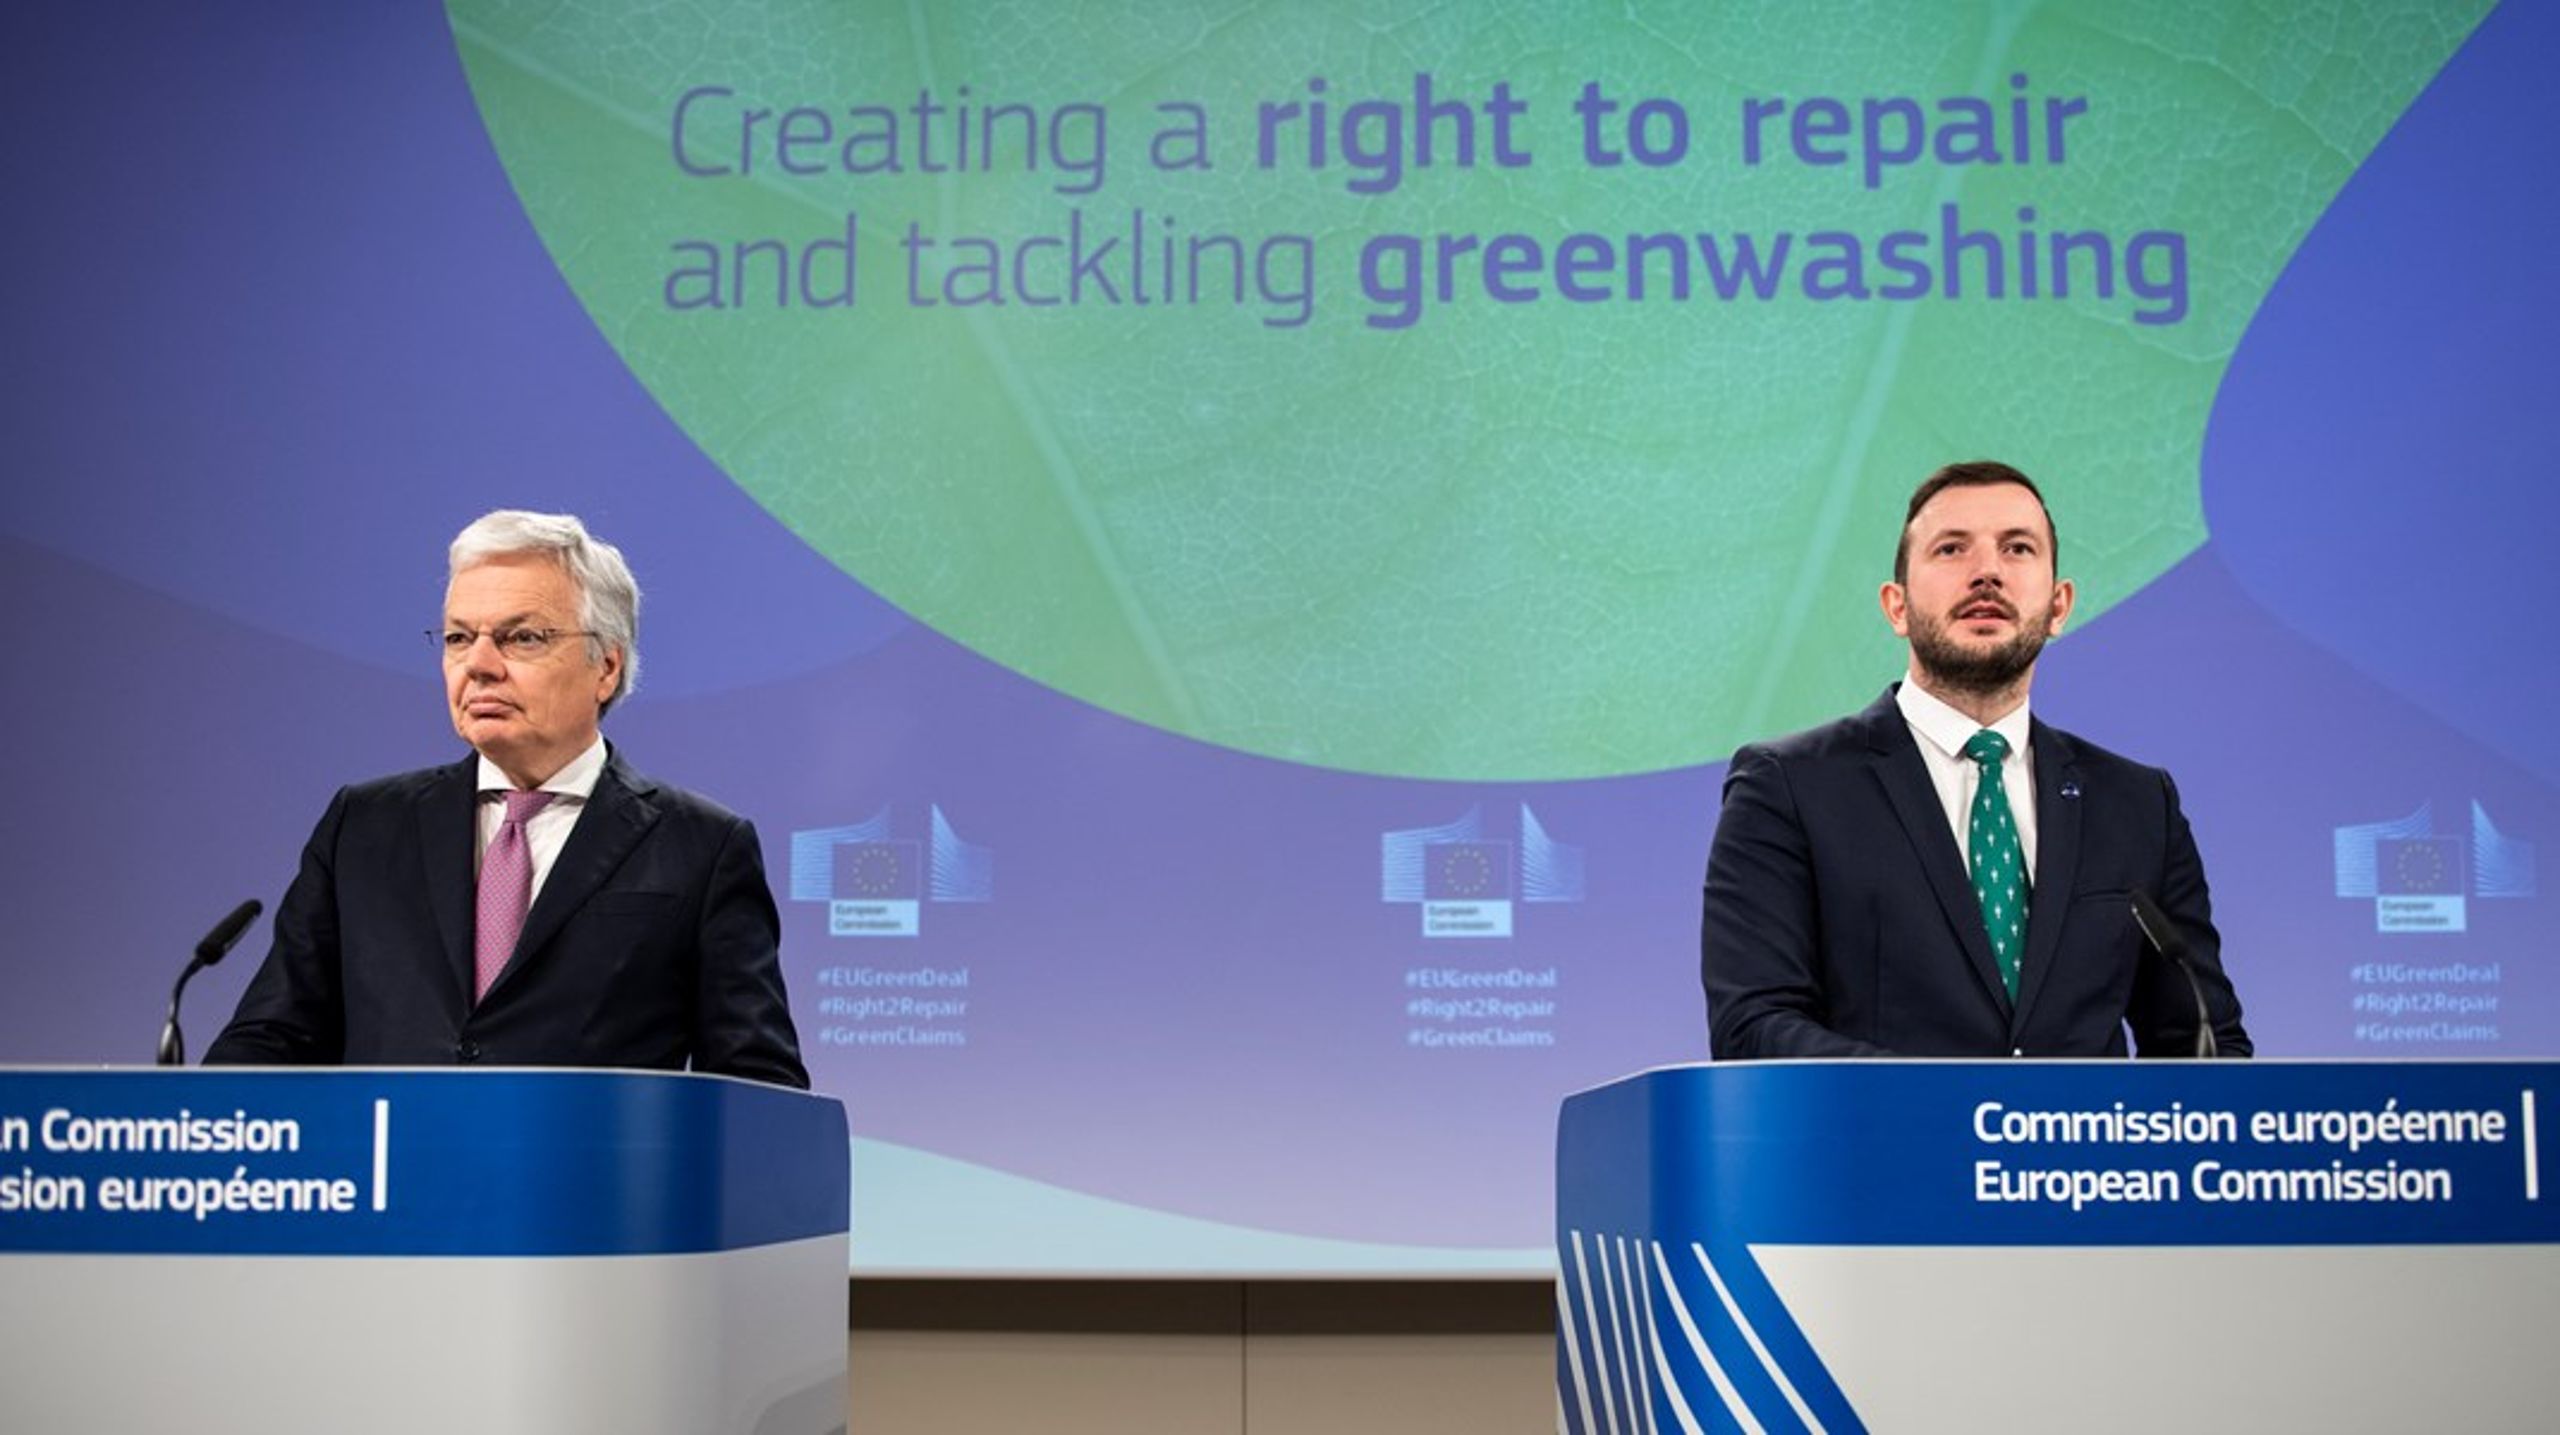 EU:s justitiekommissionär Didier Reyners och EU:s miljökommissionär&nbsp;Virginijus Sinkevičius vill stärka rättigheterna för europeiska konsumenter och samtidigt gynna den gröna omställningen.&nbsp;